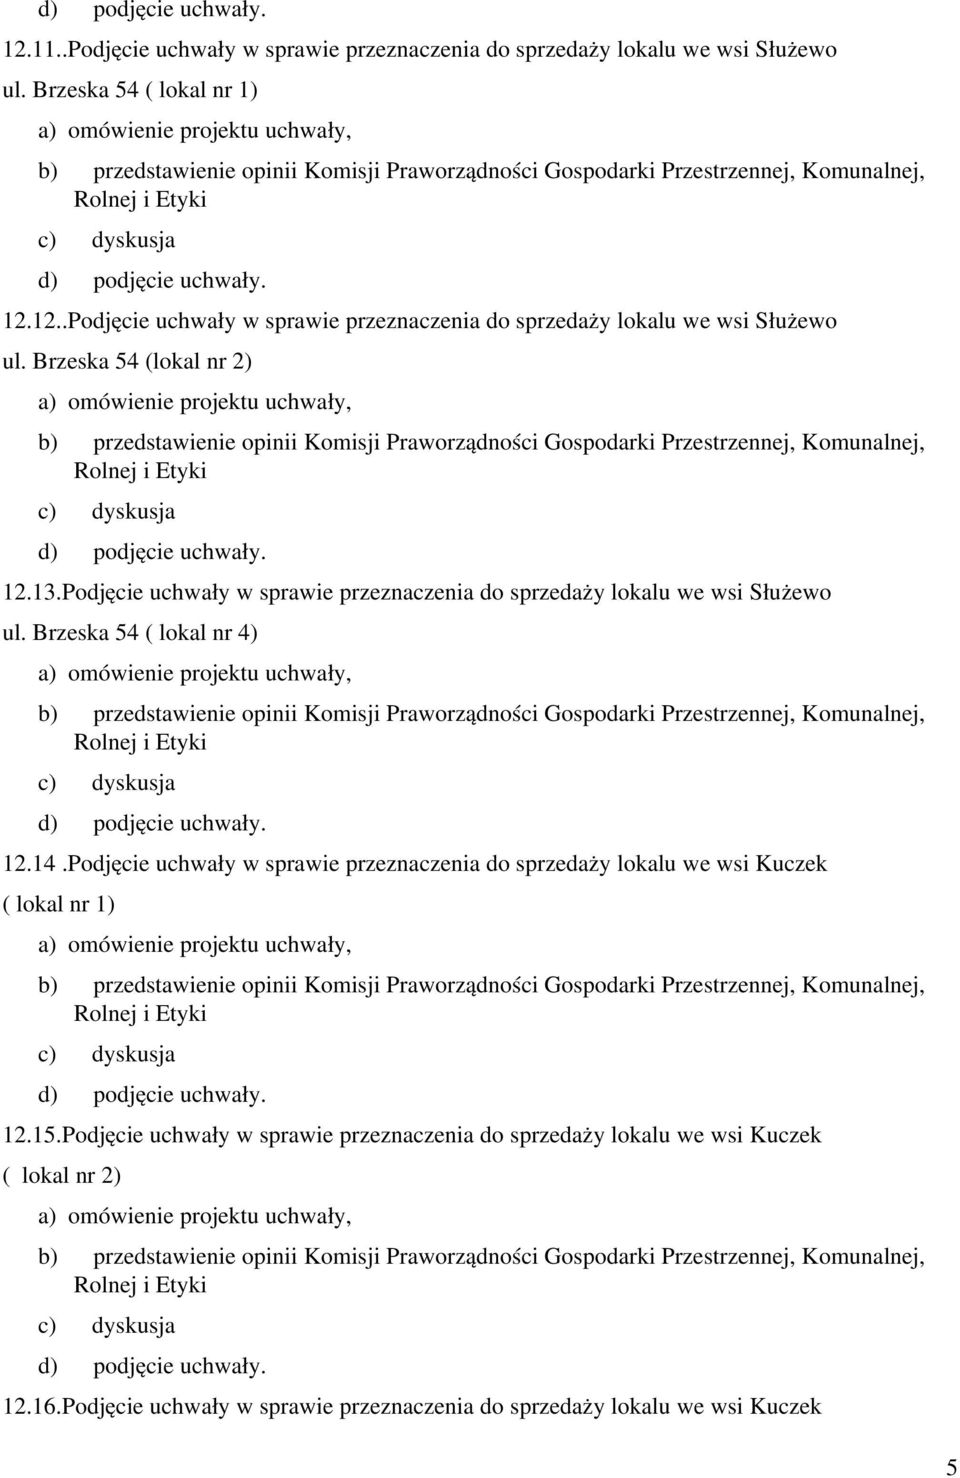 Podjęcie uchwały w sprawie przeznaczenia do sprzedaży lokalu we wsi Kuczek ( lokal nr 1) 12.15.